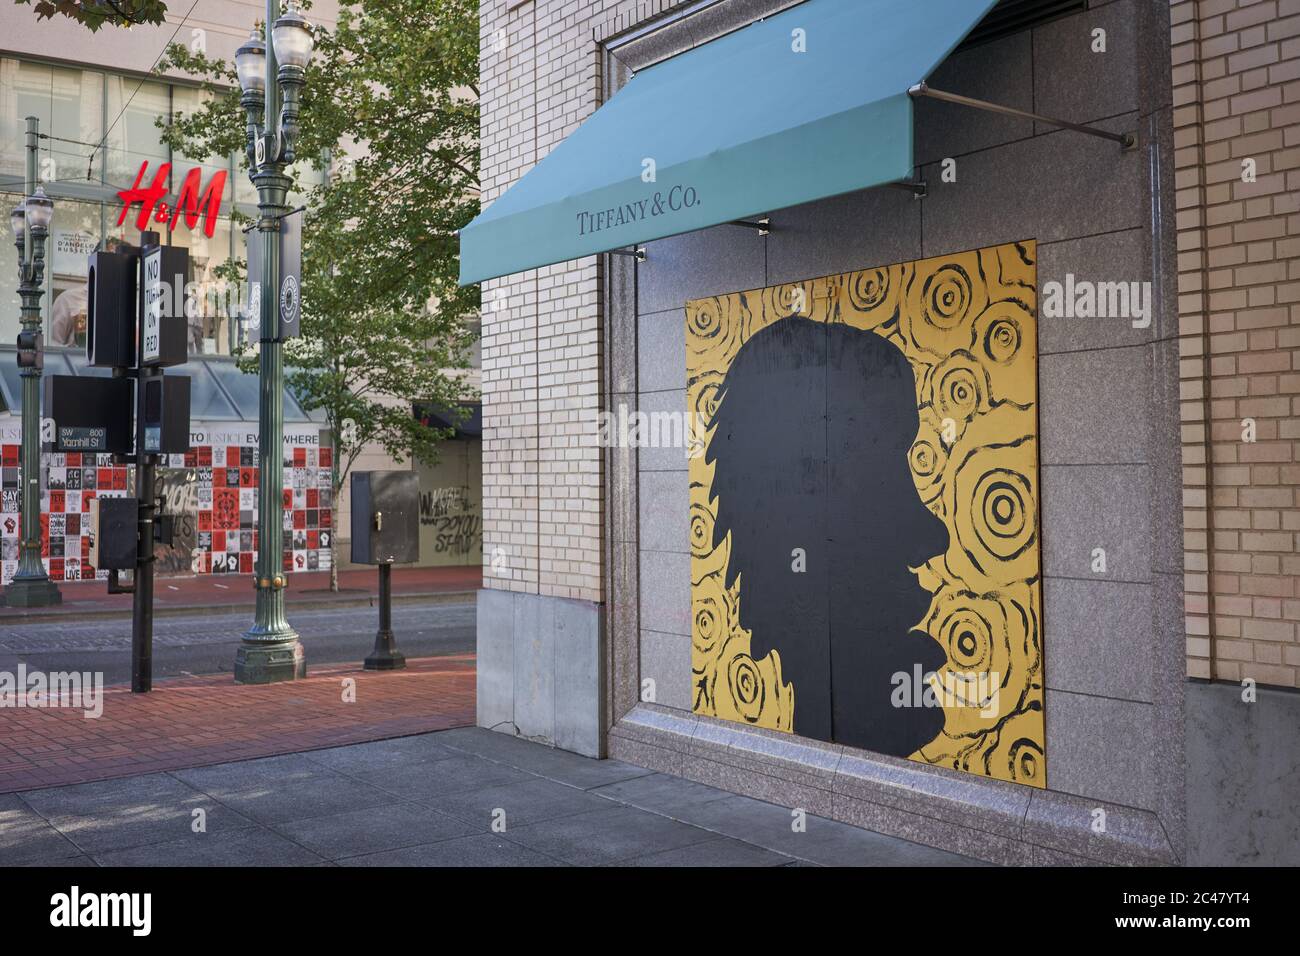 Il negozio Tiffany & Co chiuso e imbarcato nel centro di Portland, Oregon, è diventato canvases non ufficiali per gli artisti di strada per fare proteste pacifiche. Foto Stock